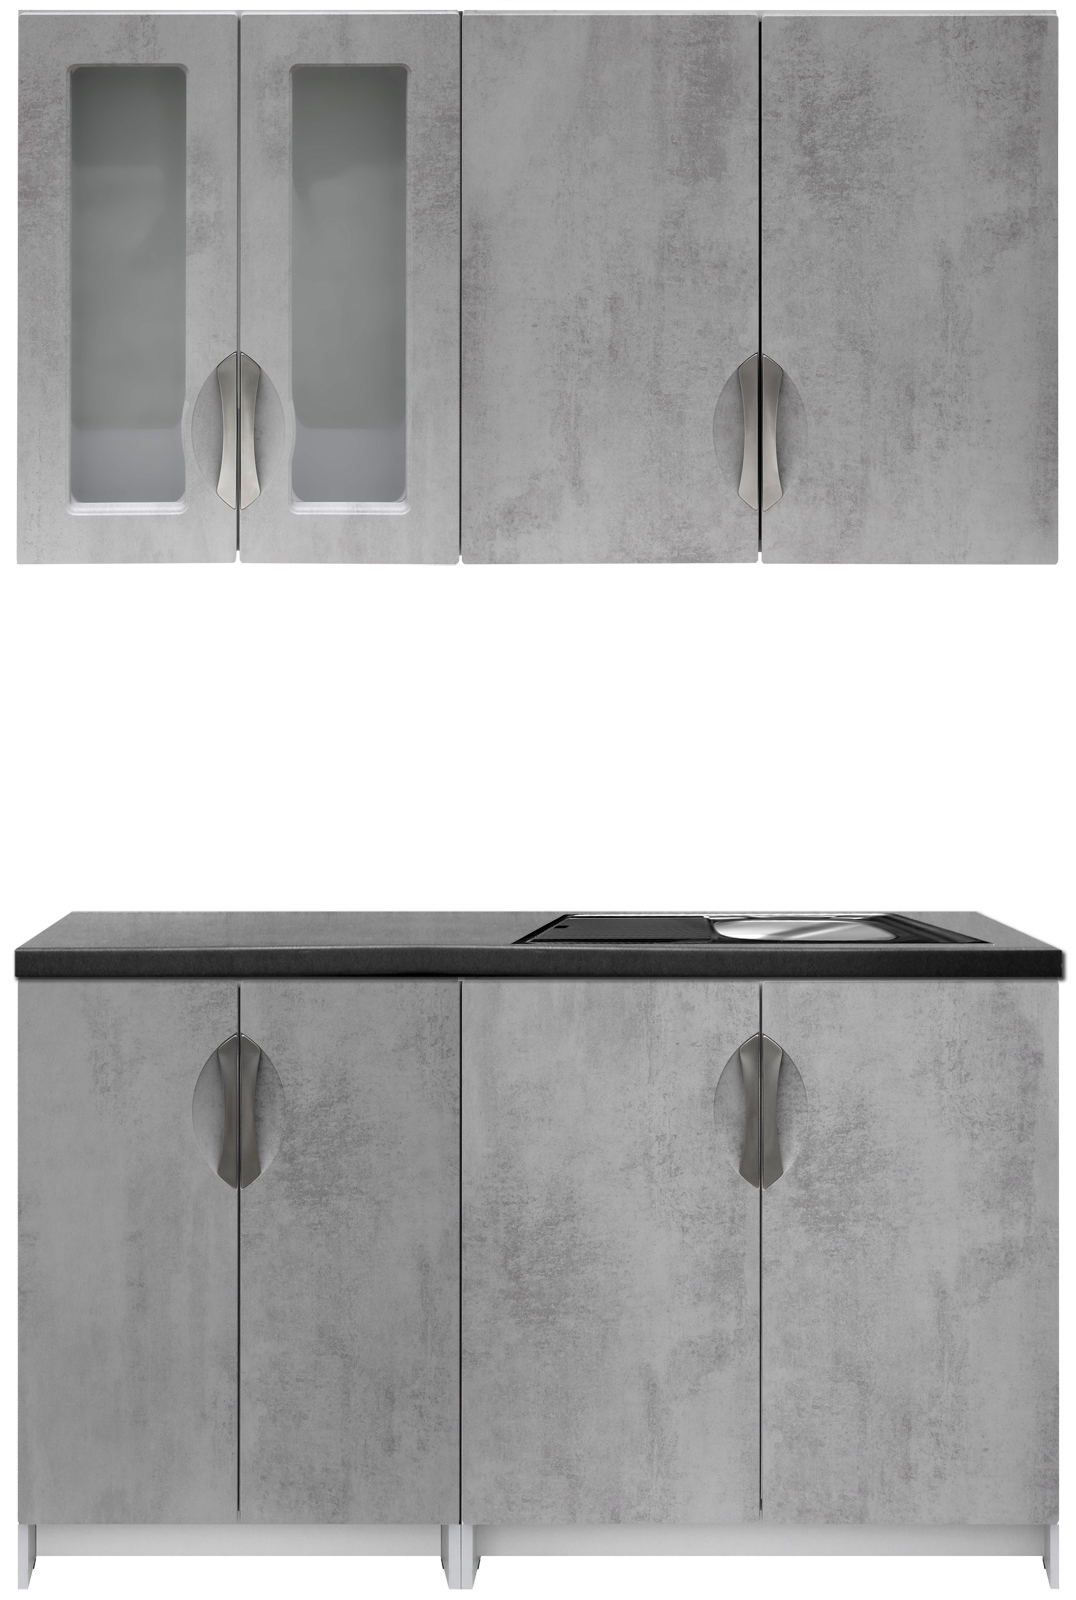 Kuchyňská linka 140 cm barva beton korpus šedý